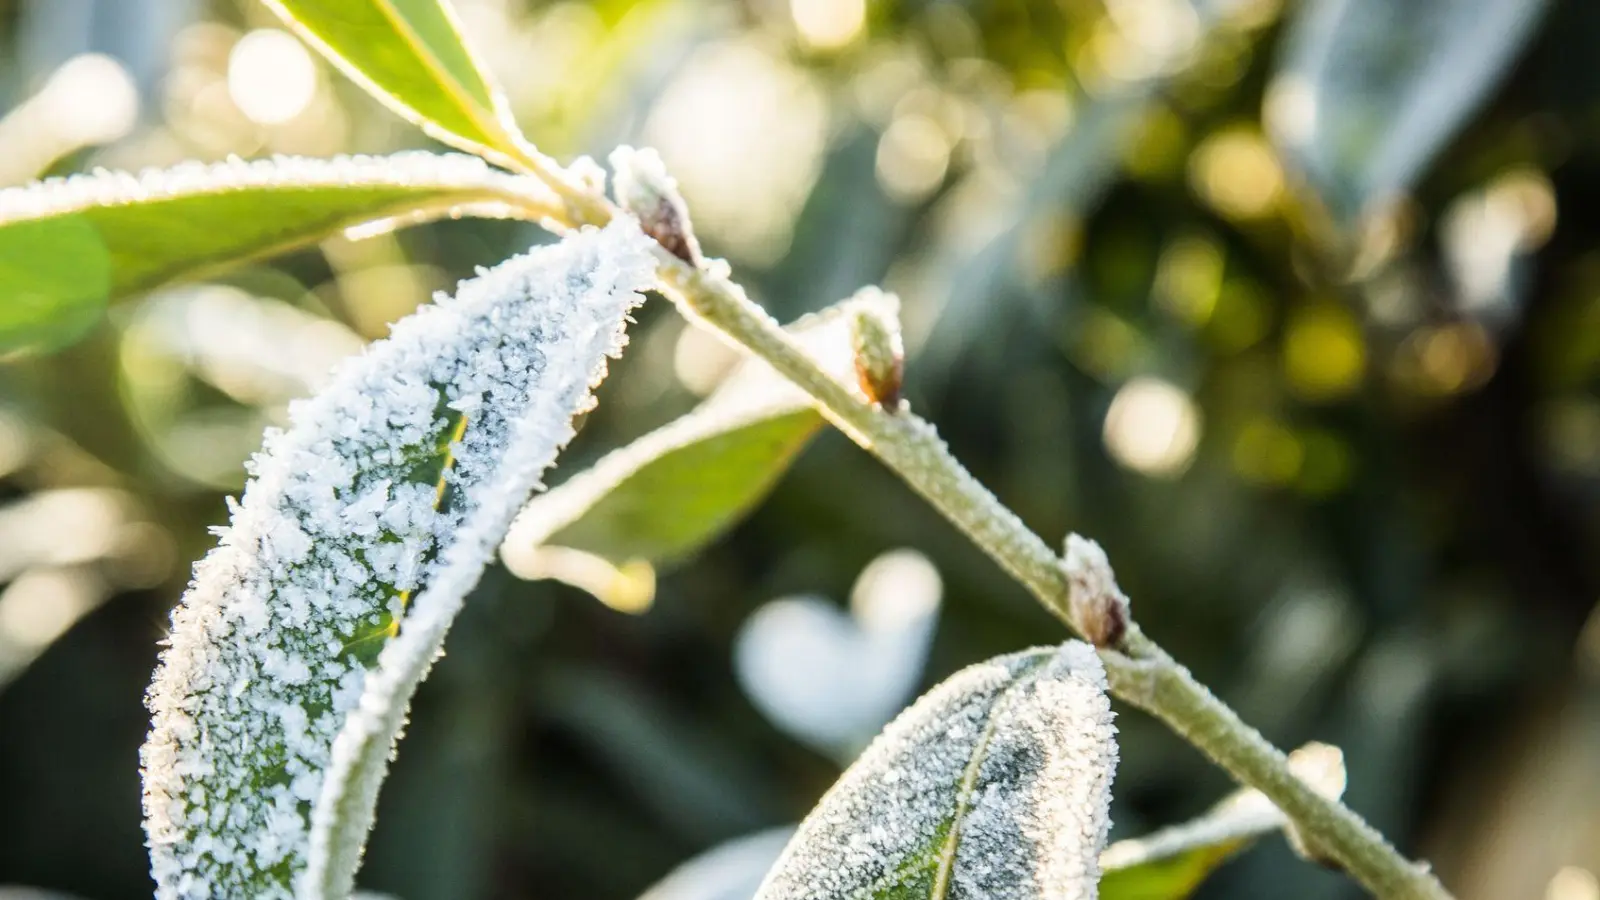 Erfrieren bei Frost und Kälte? Nein, daran liegt es meist nicht, wenn Immergrüne nach dem Winter eingehen. (Foto: Christin Klose/dpa-tmn)